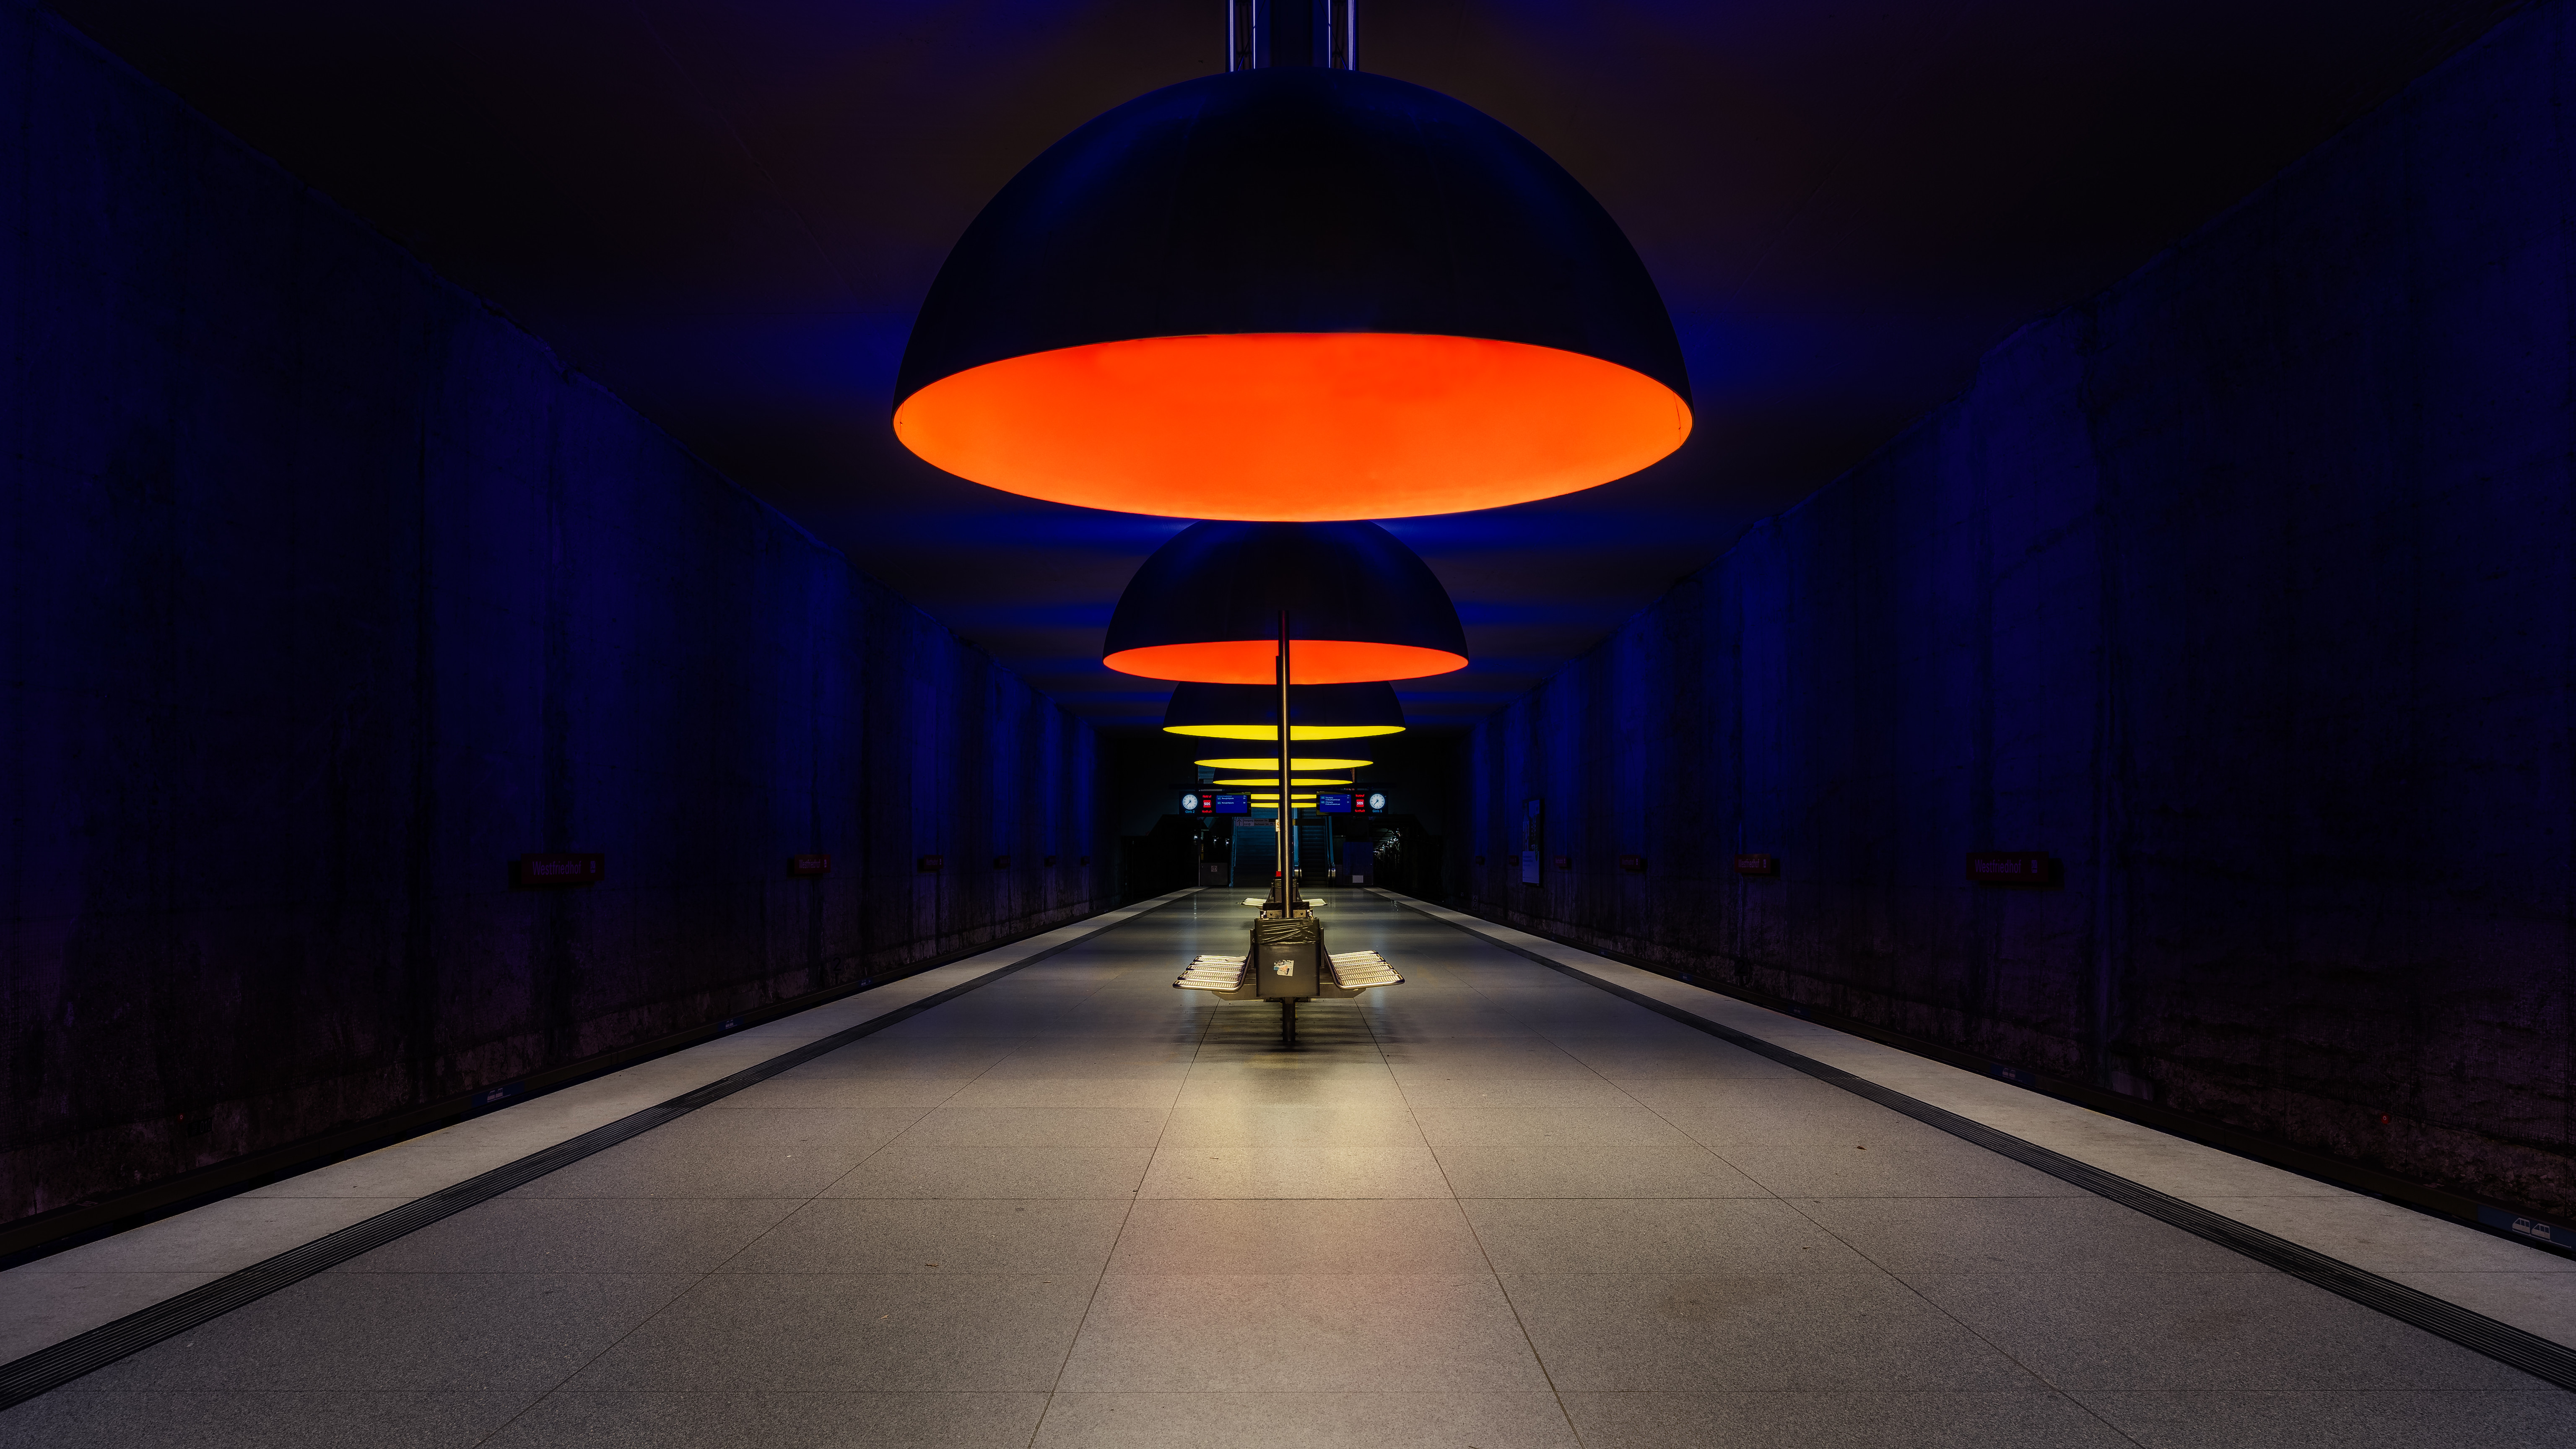 General 6144x3456 Munich Bavaria Westfriedhof architecture underground platform lights symmetry blue orange low light